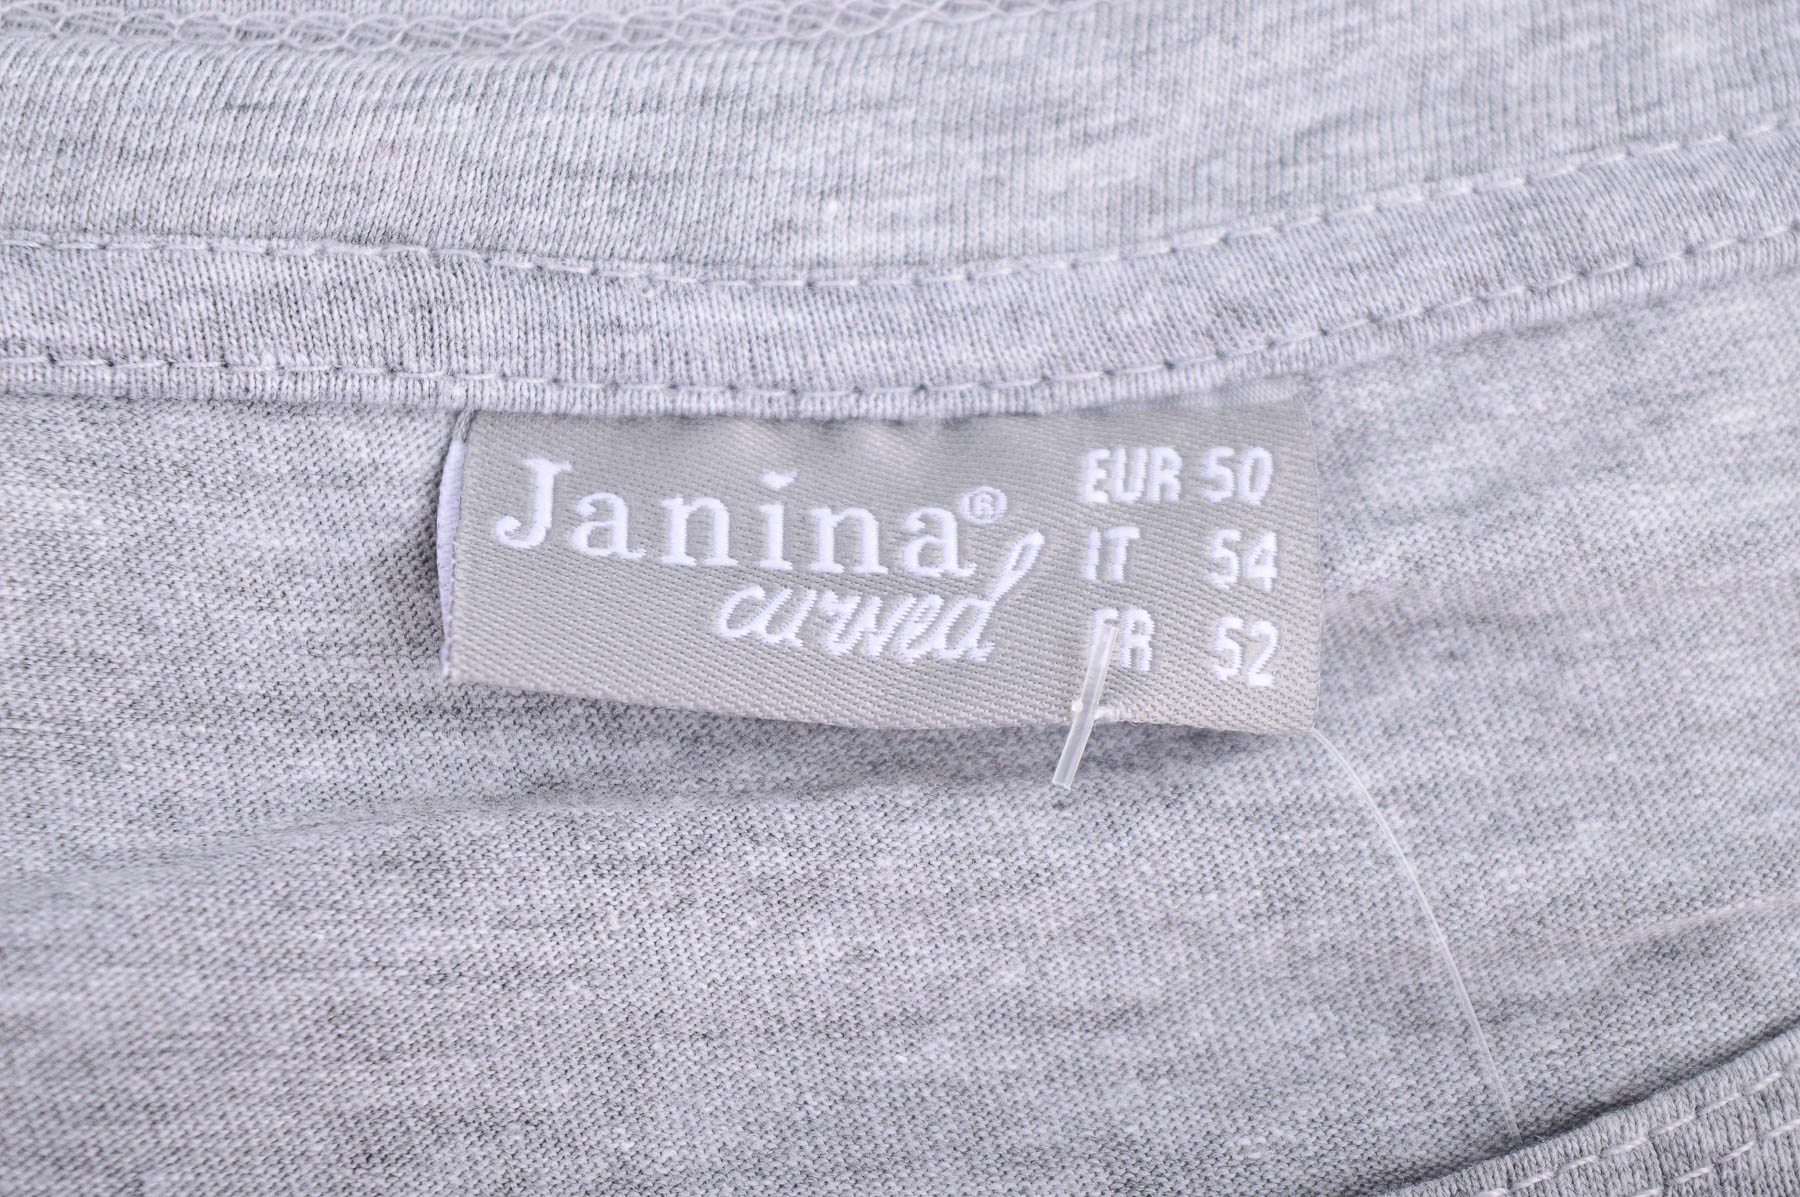 Дамска тениска - Janina - 2